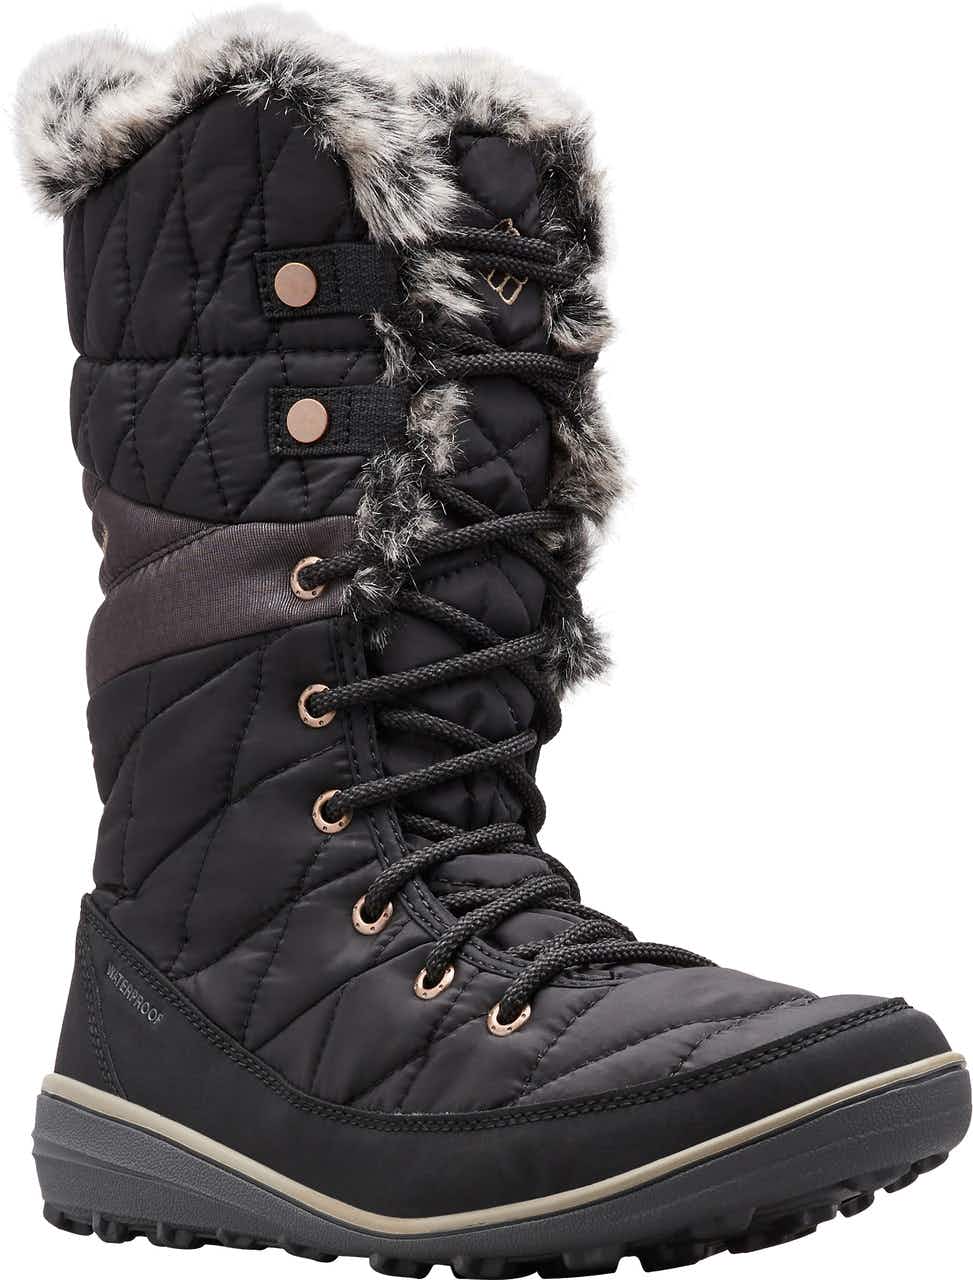 Heavenly Omni-Heat Winter Boots Black/Kettle